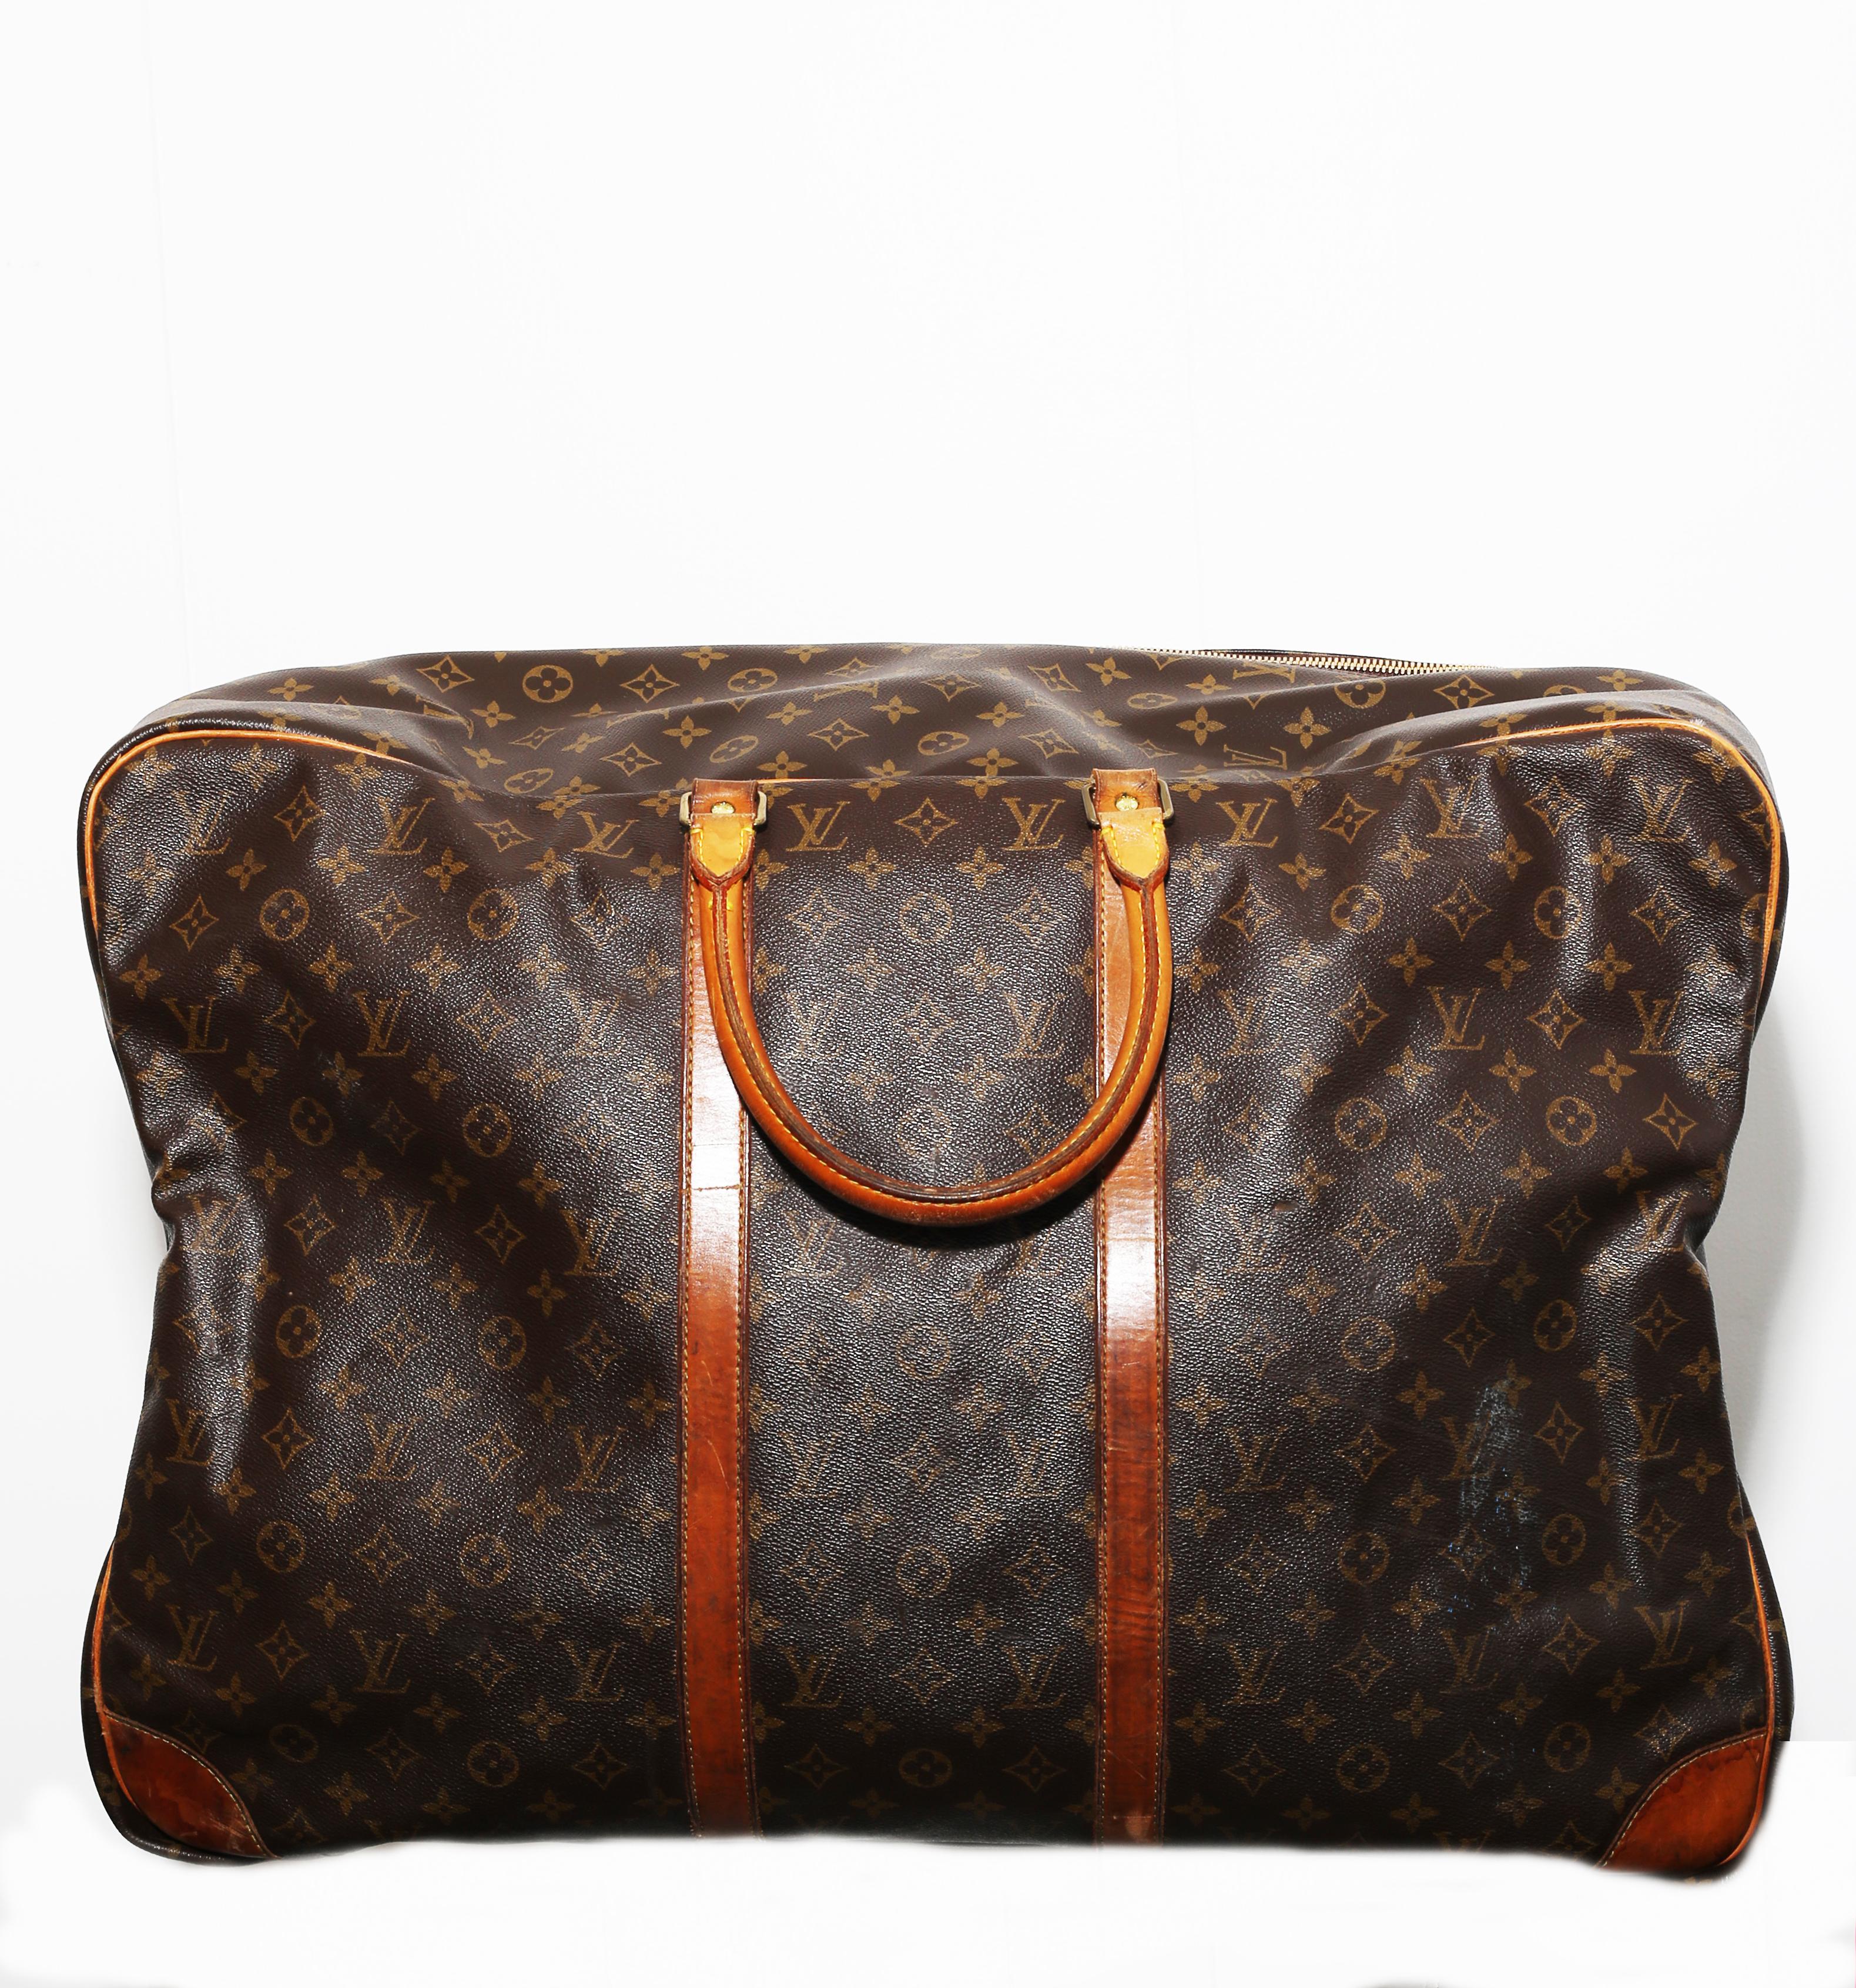 Black Louis Vuitton Monogram Sirius Suitcase 65cm Luggage Weekender Travel Bag 90´s